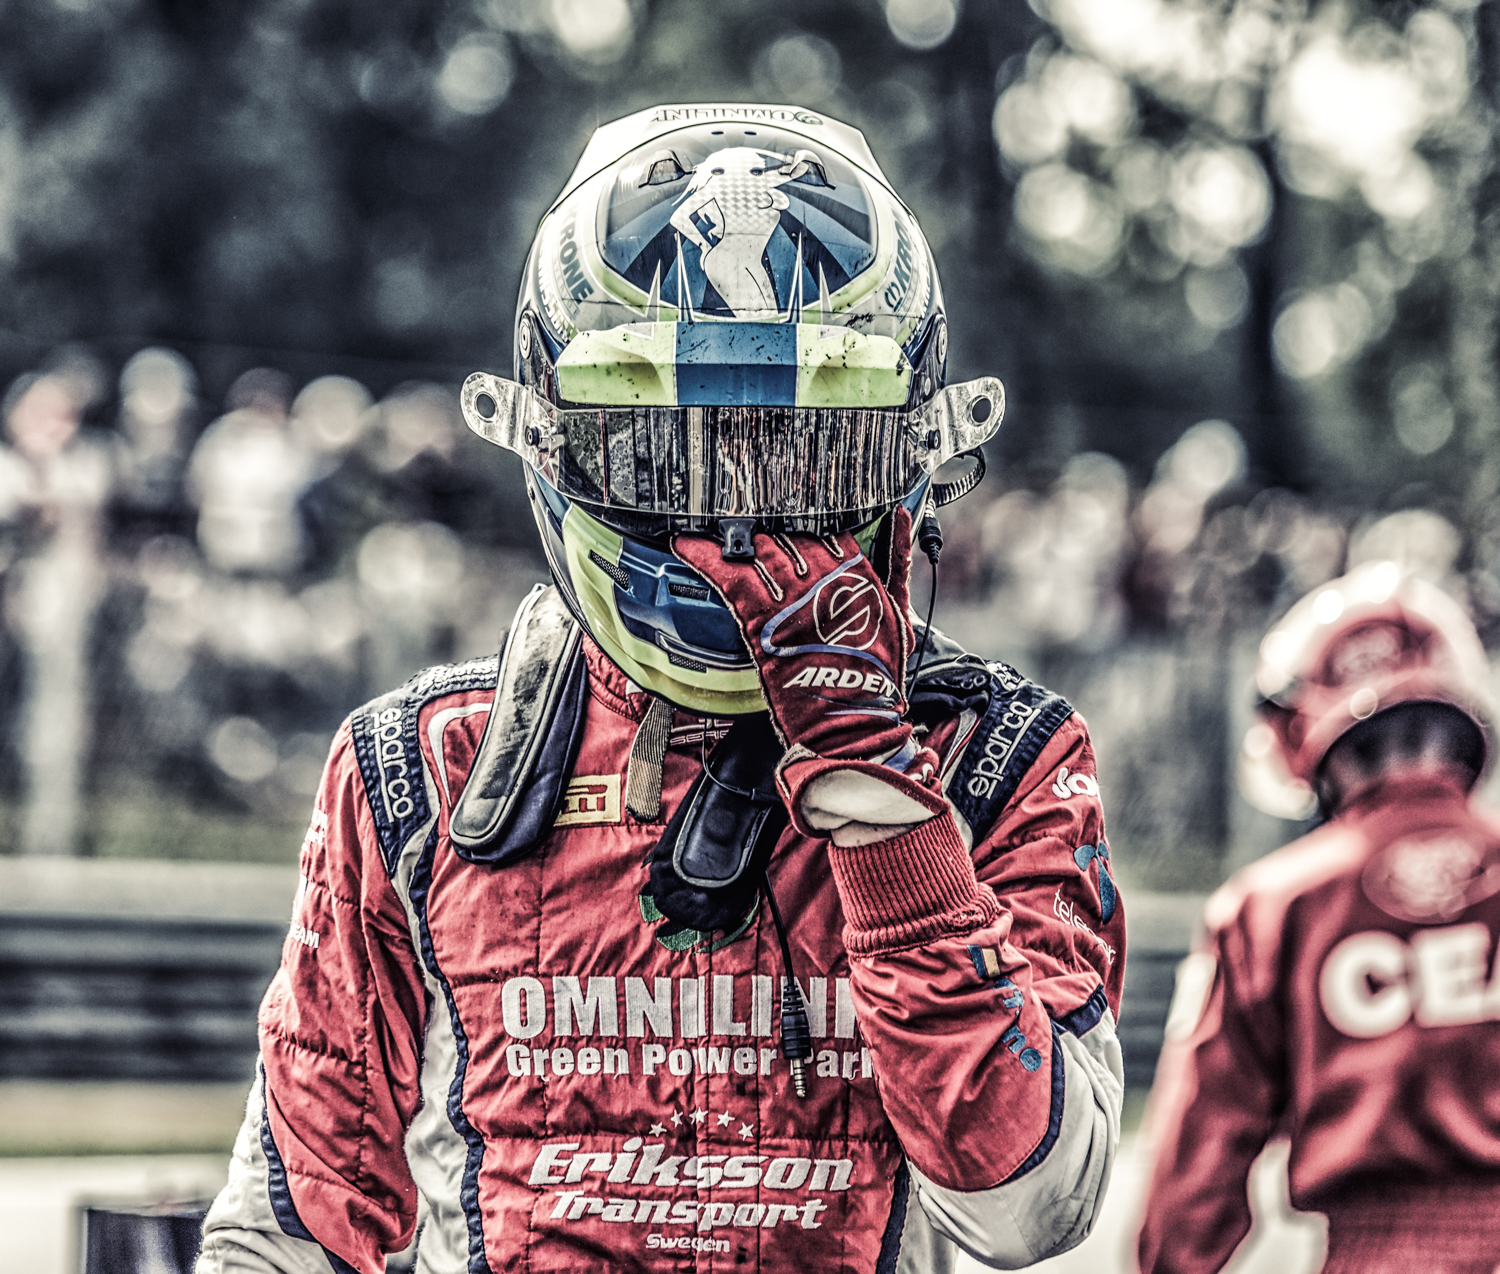 Monza 2016 - Jimmy Eriksson.jpg